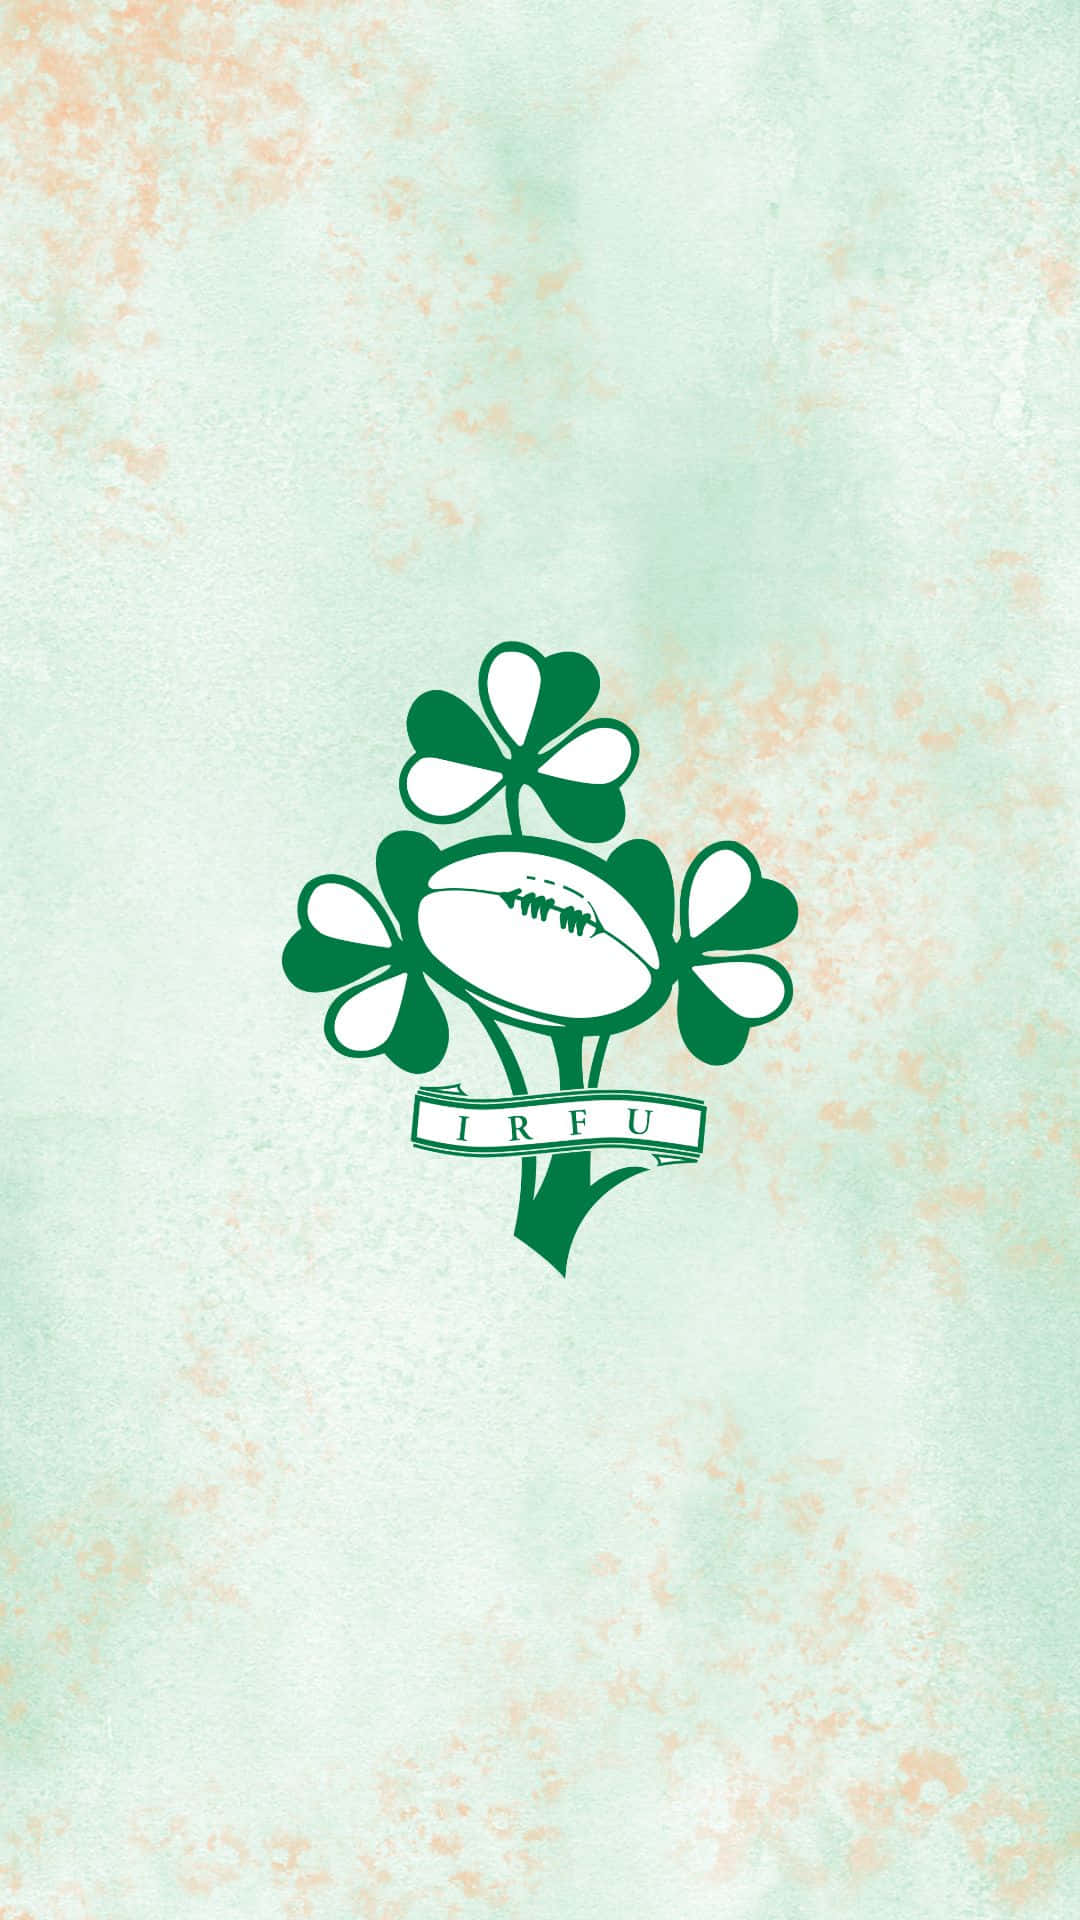 Equipode Rugby De Irlanda En Acción. Fondo de pantalla